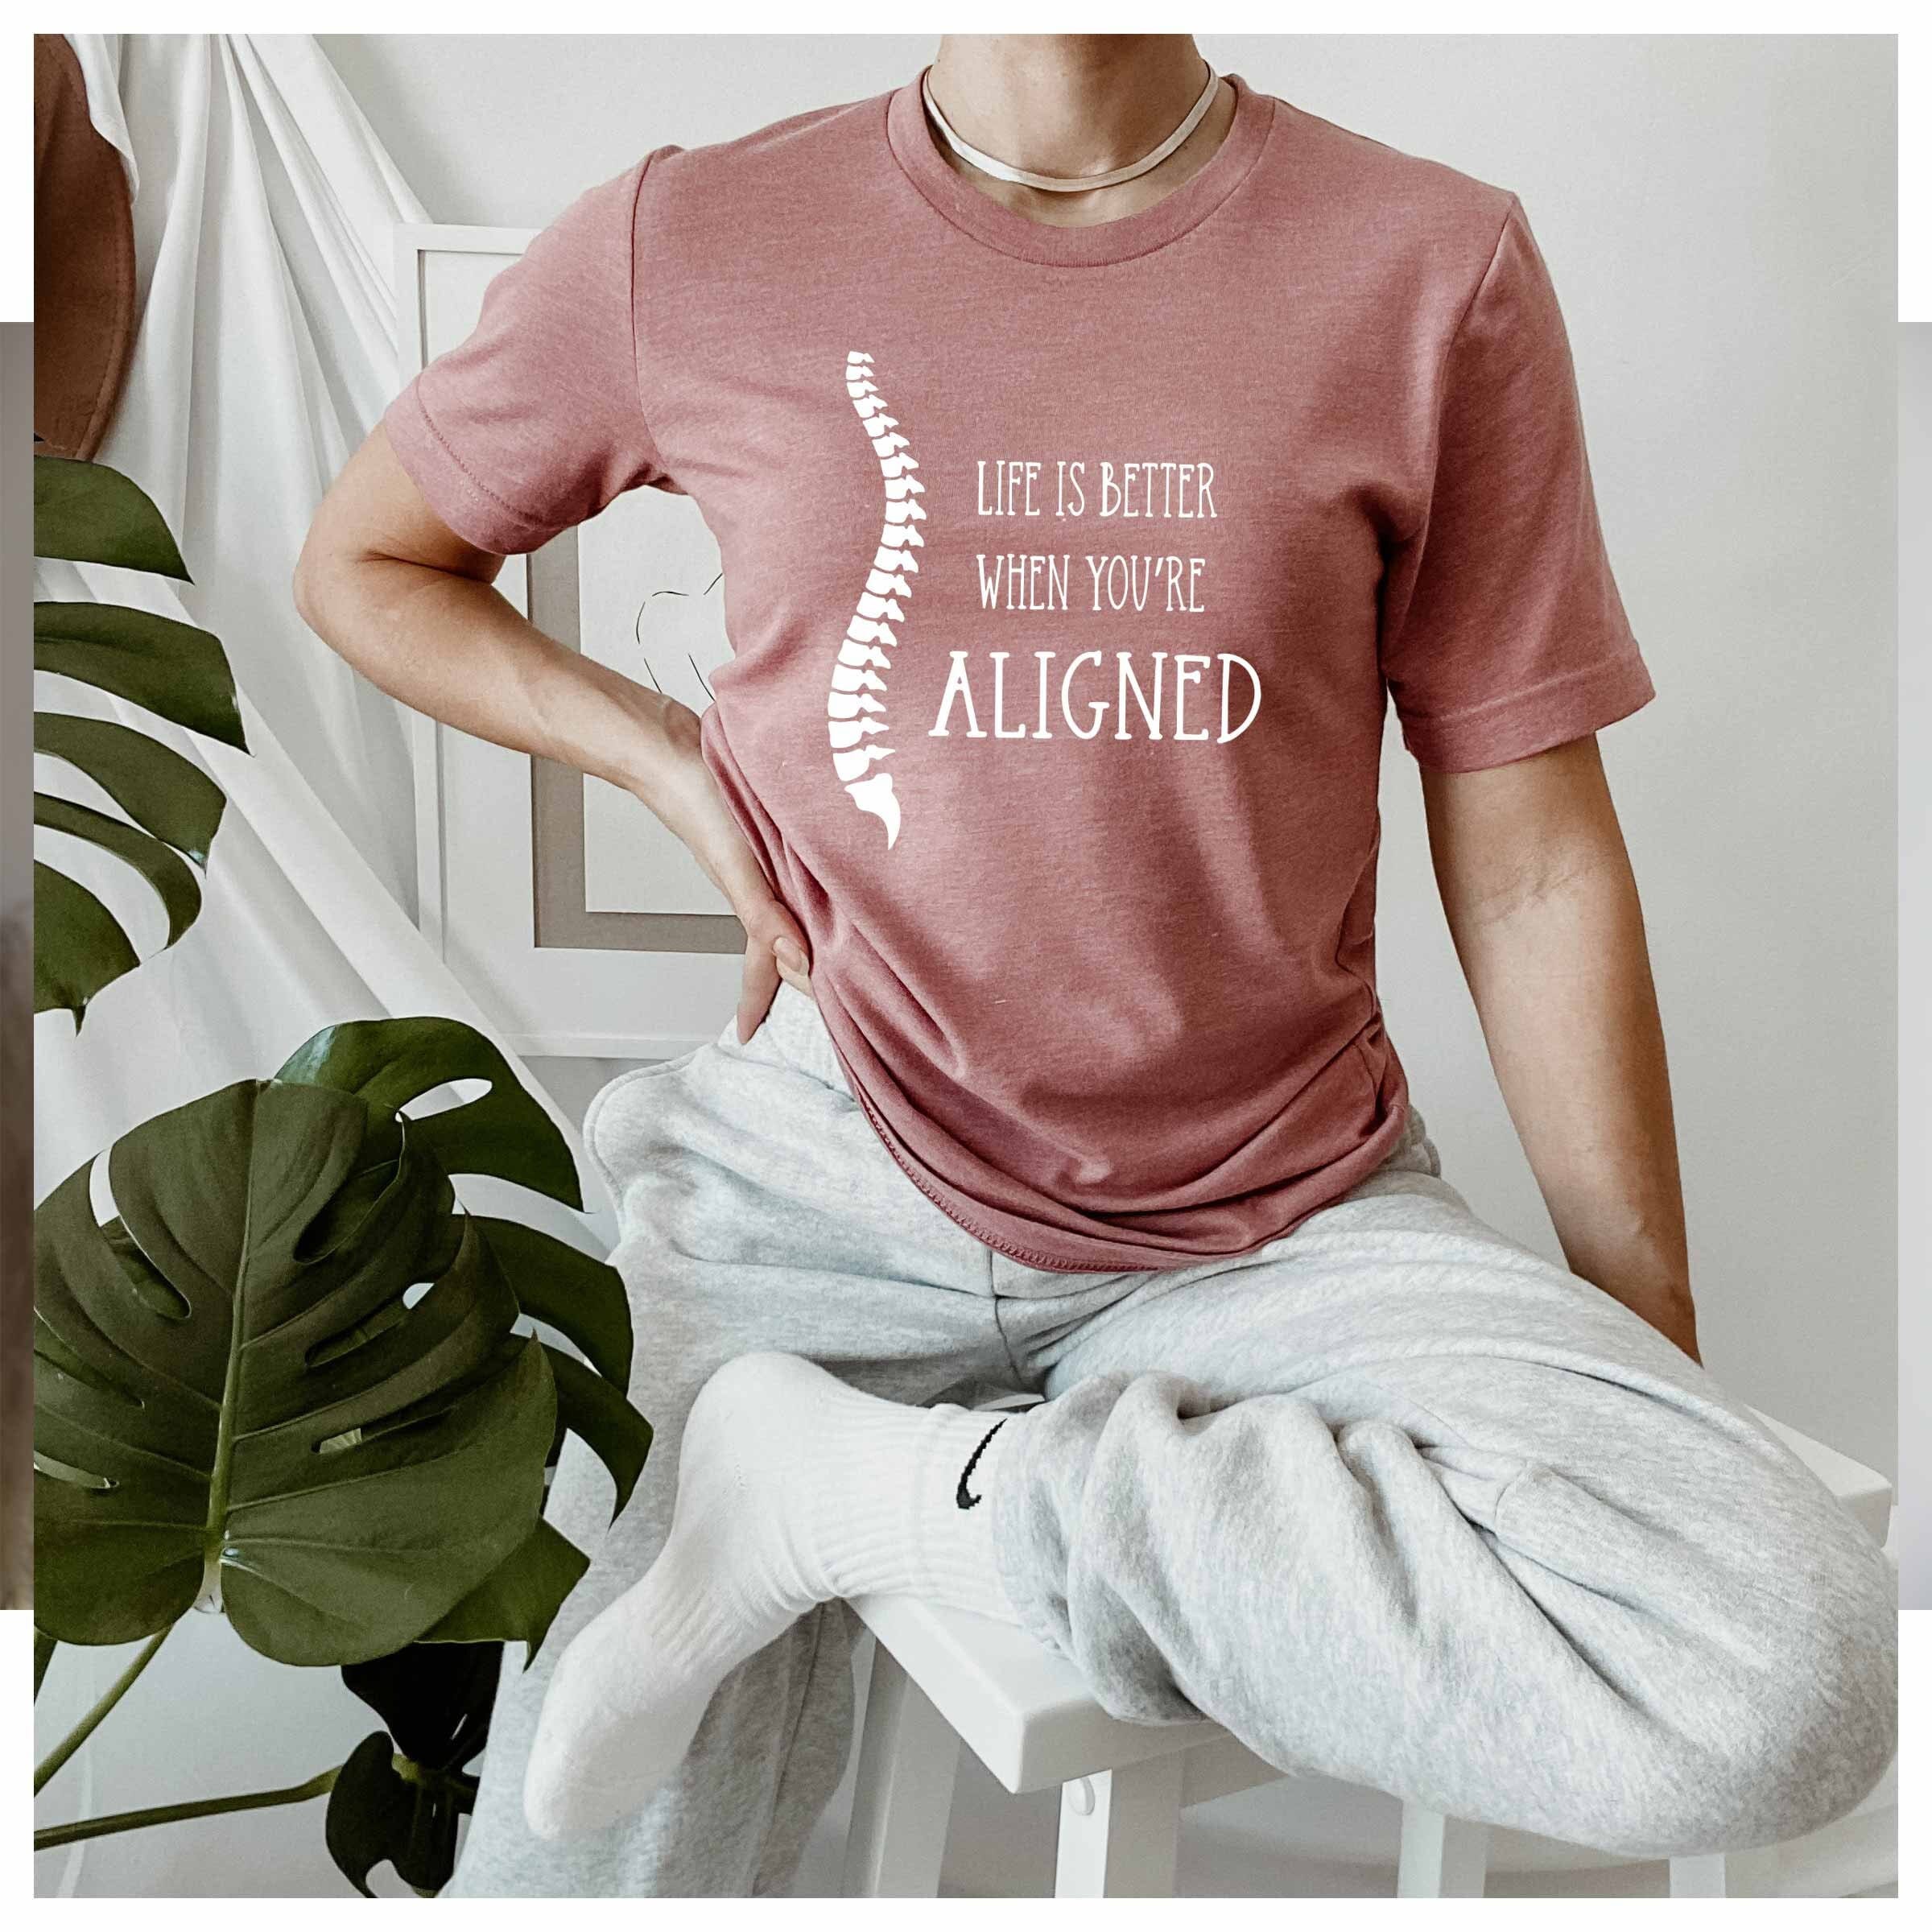 Bundle T-shirt Maker Alignment Guide Tool / Printable Digital